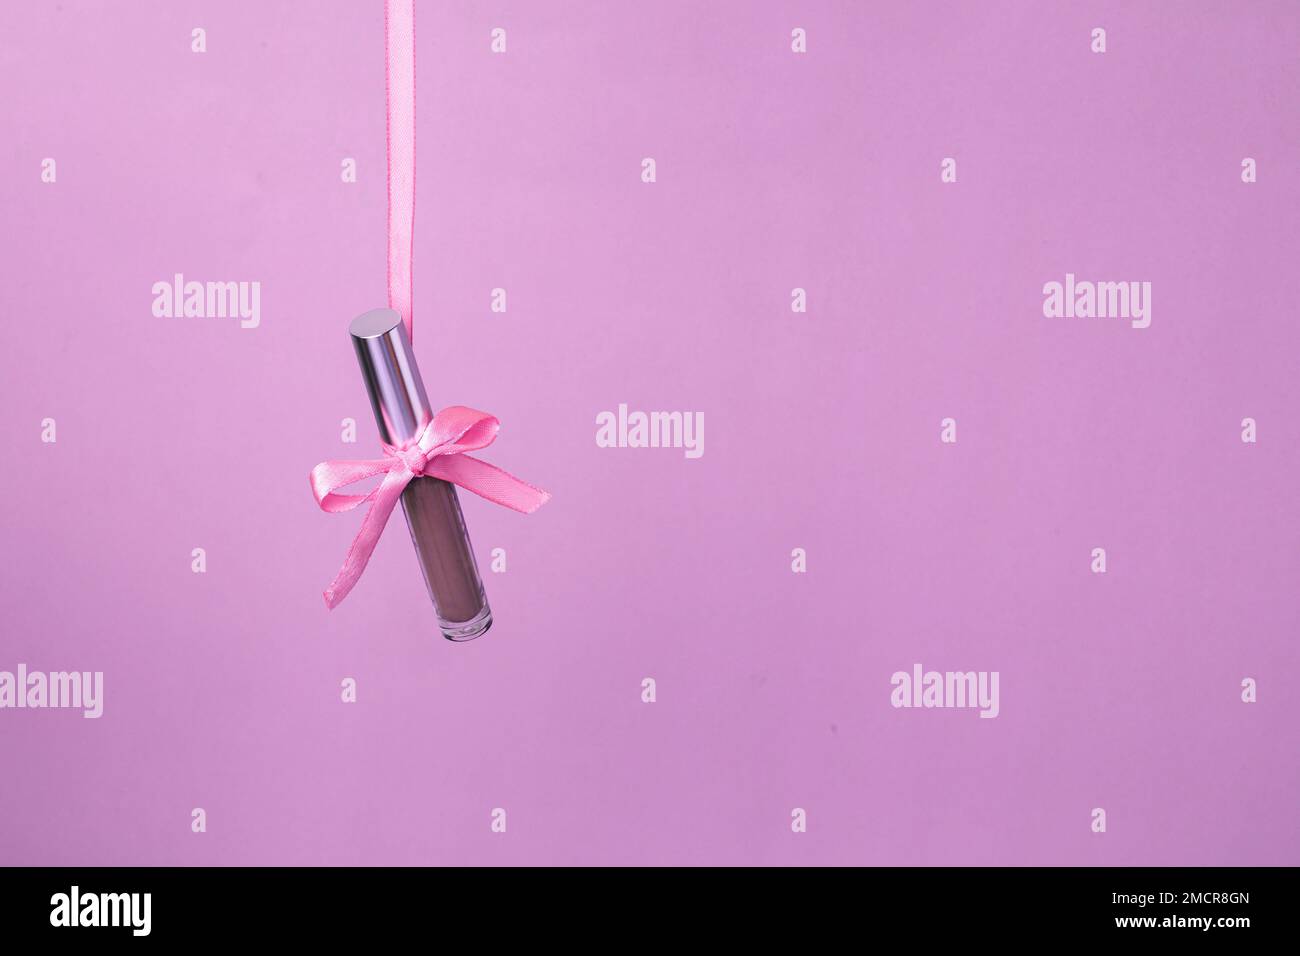 Flüssiger Schatten mit natürlichem Farbton hängt auf einem pinkfarbenen Band auf pinkfarbenem Hintergrund. Konzept des Geschenks für Frauen oder St. Valentinstag Stockfoto